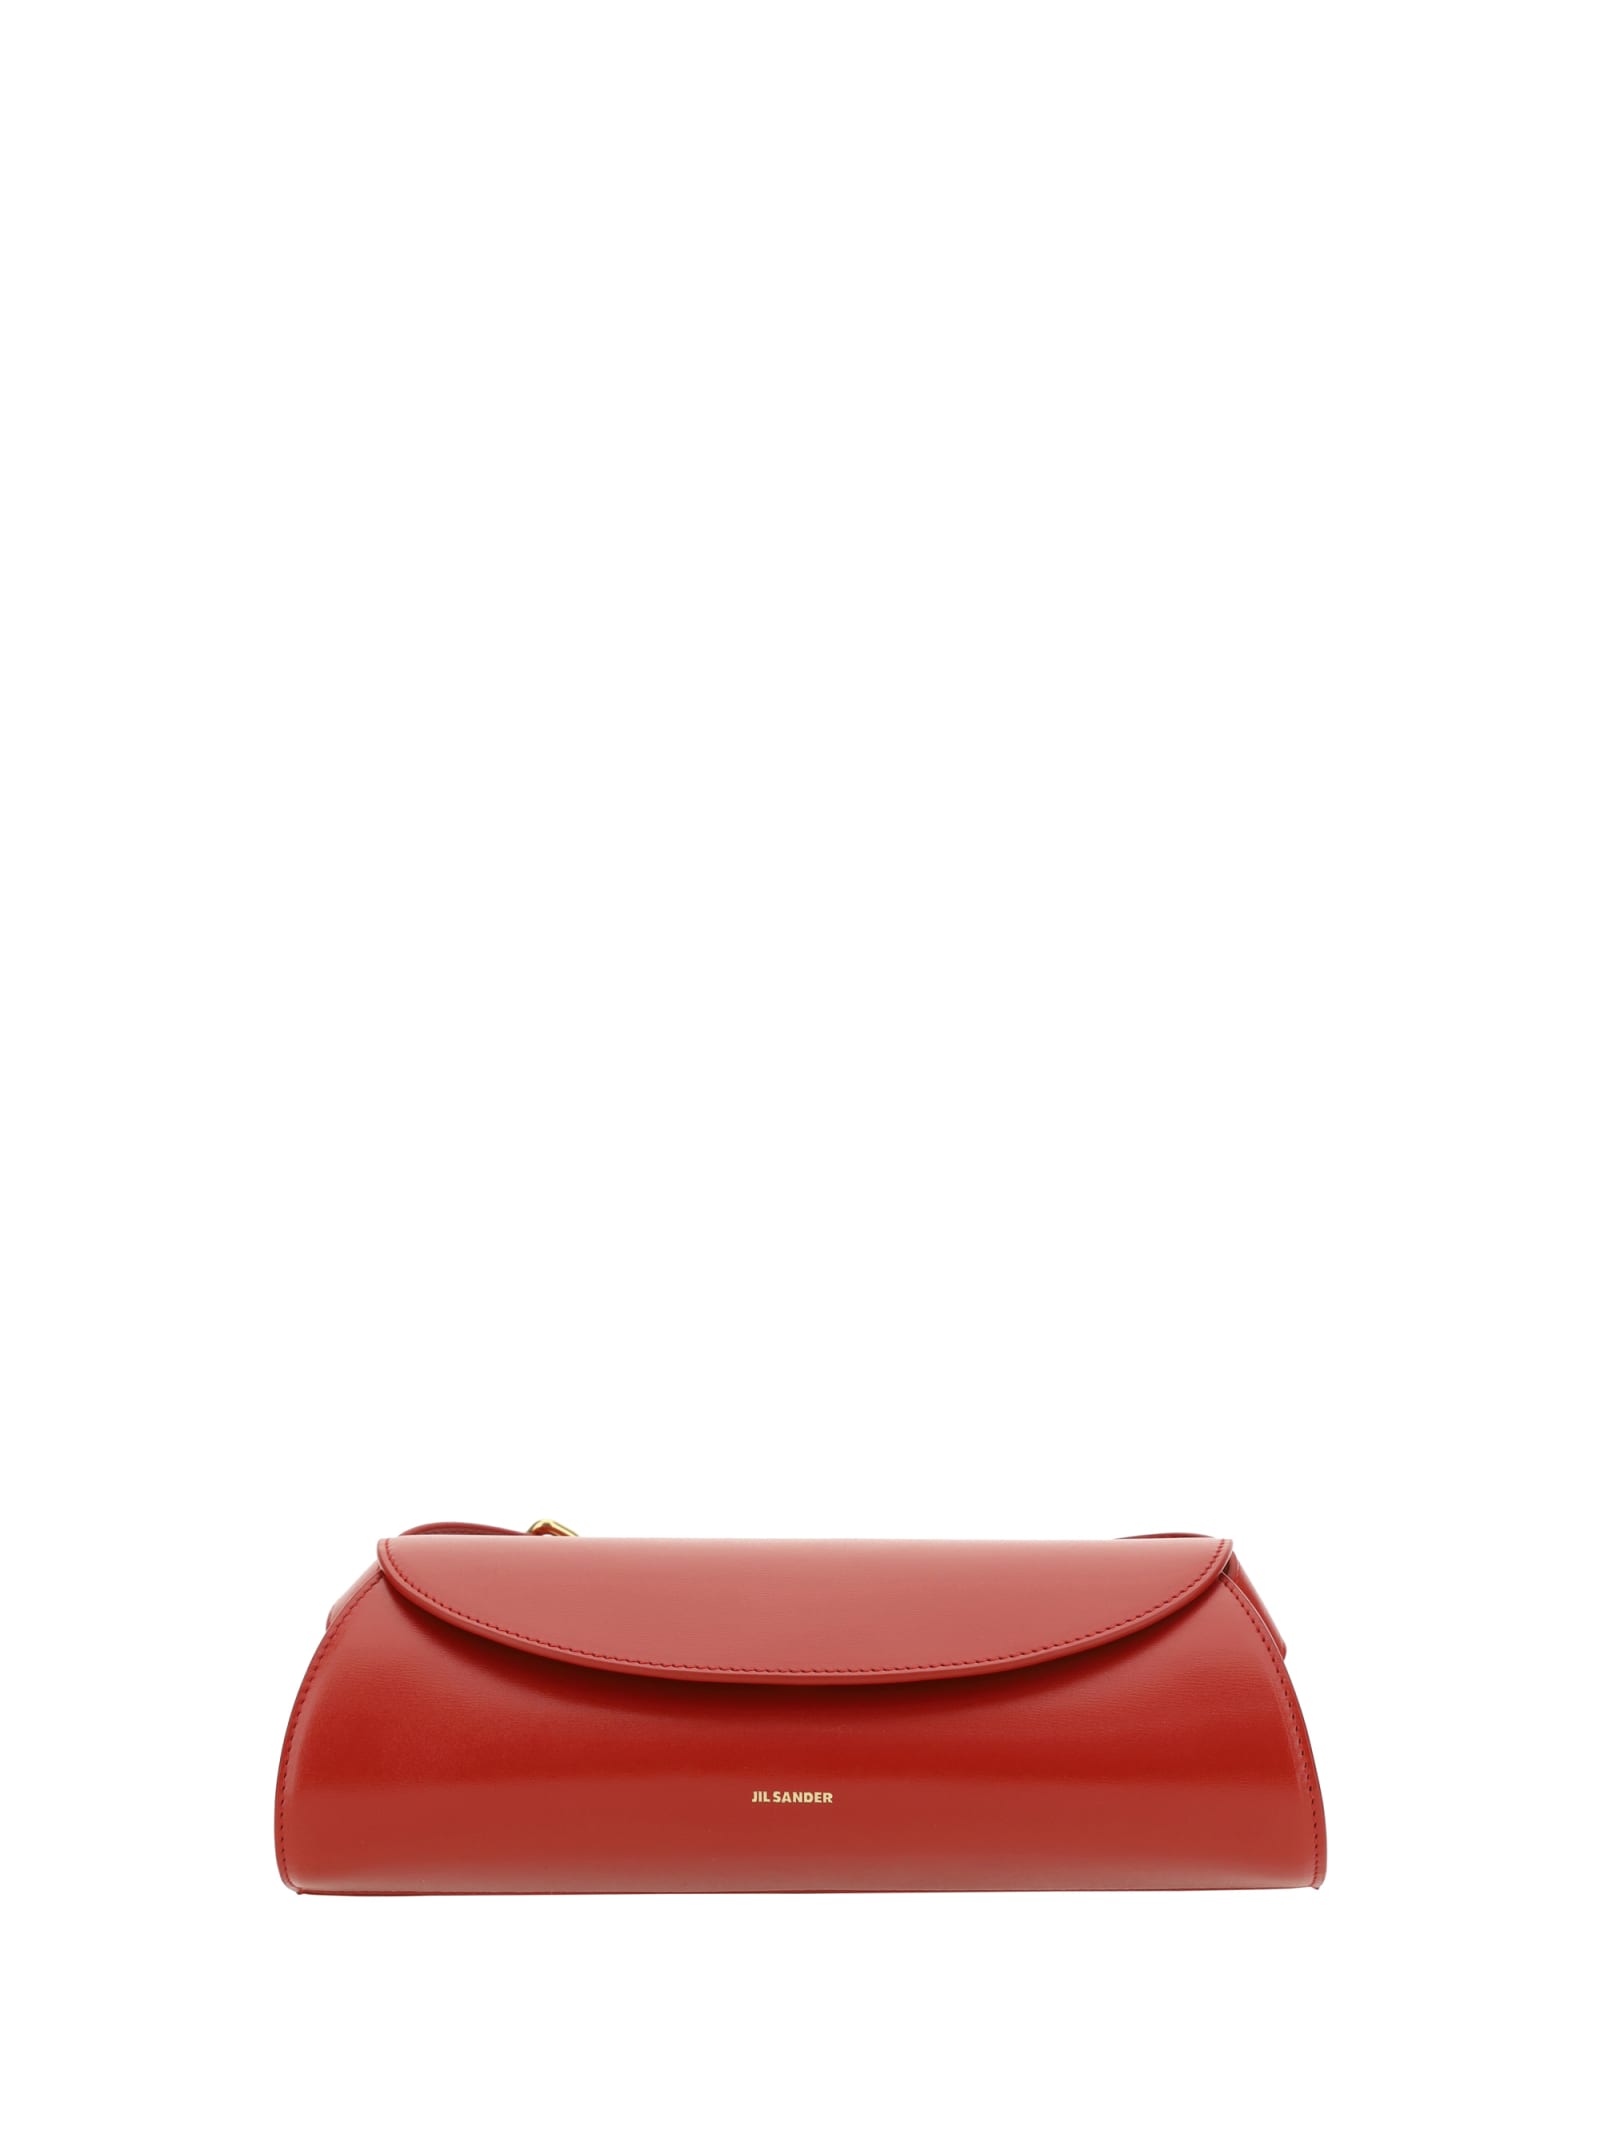 Shop Jil Sander Cannolo Handbag In Rosso